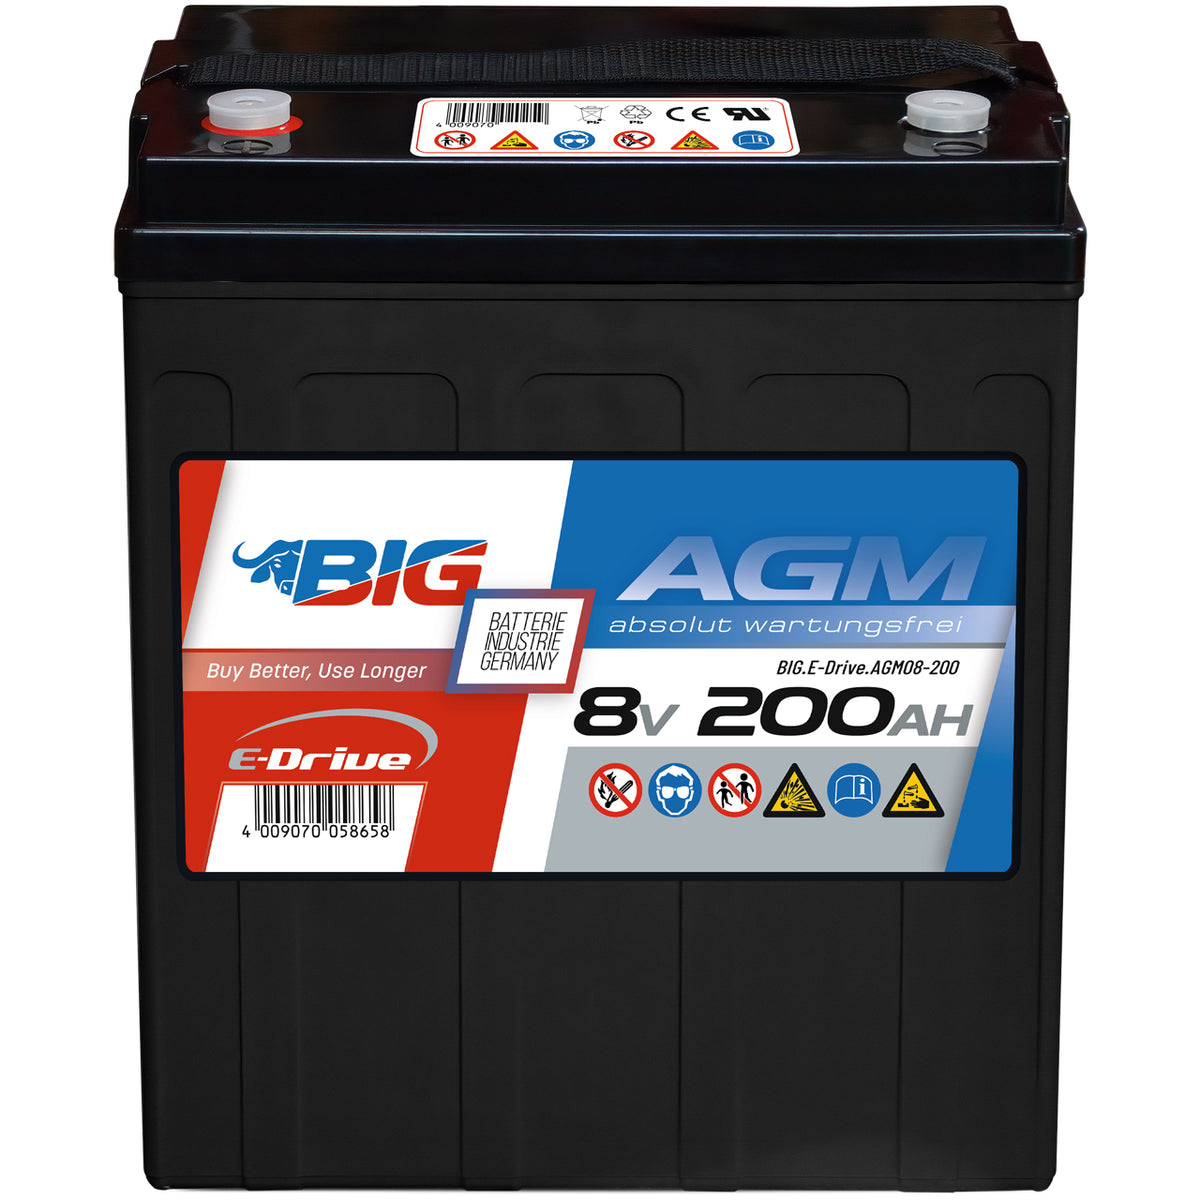 BIG E-Drive AGM 8V 200Ah